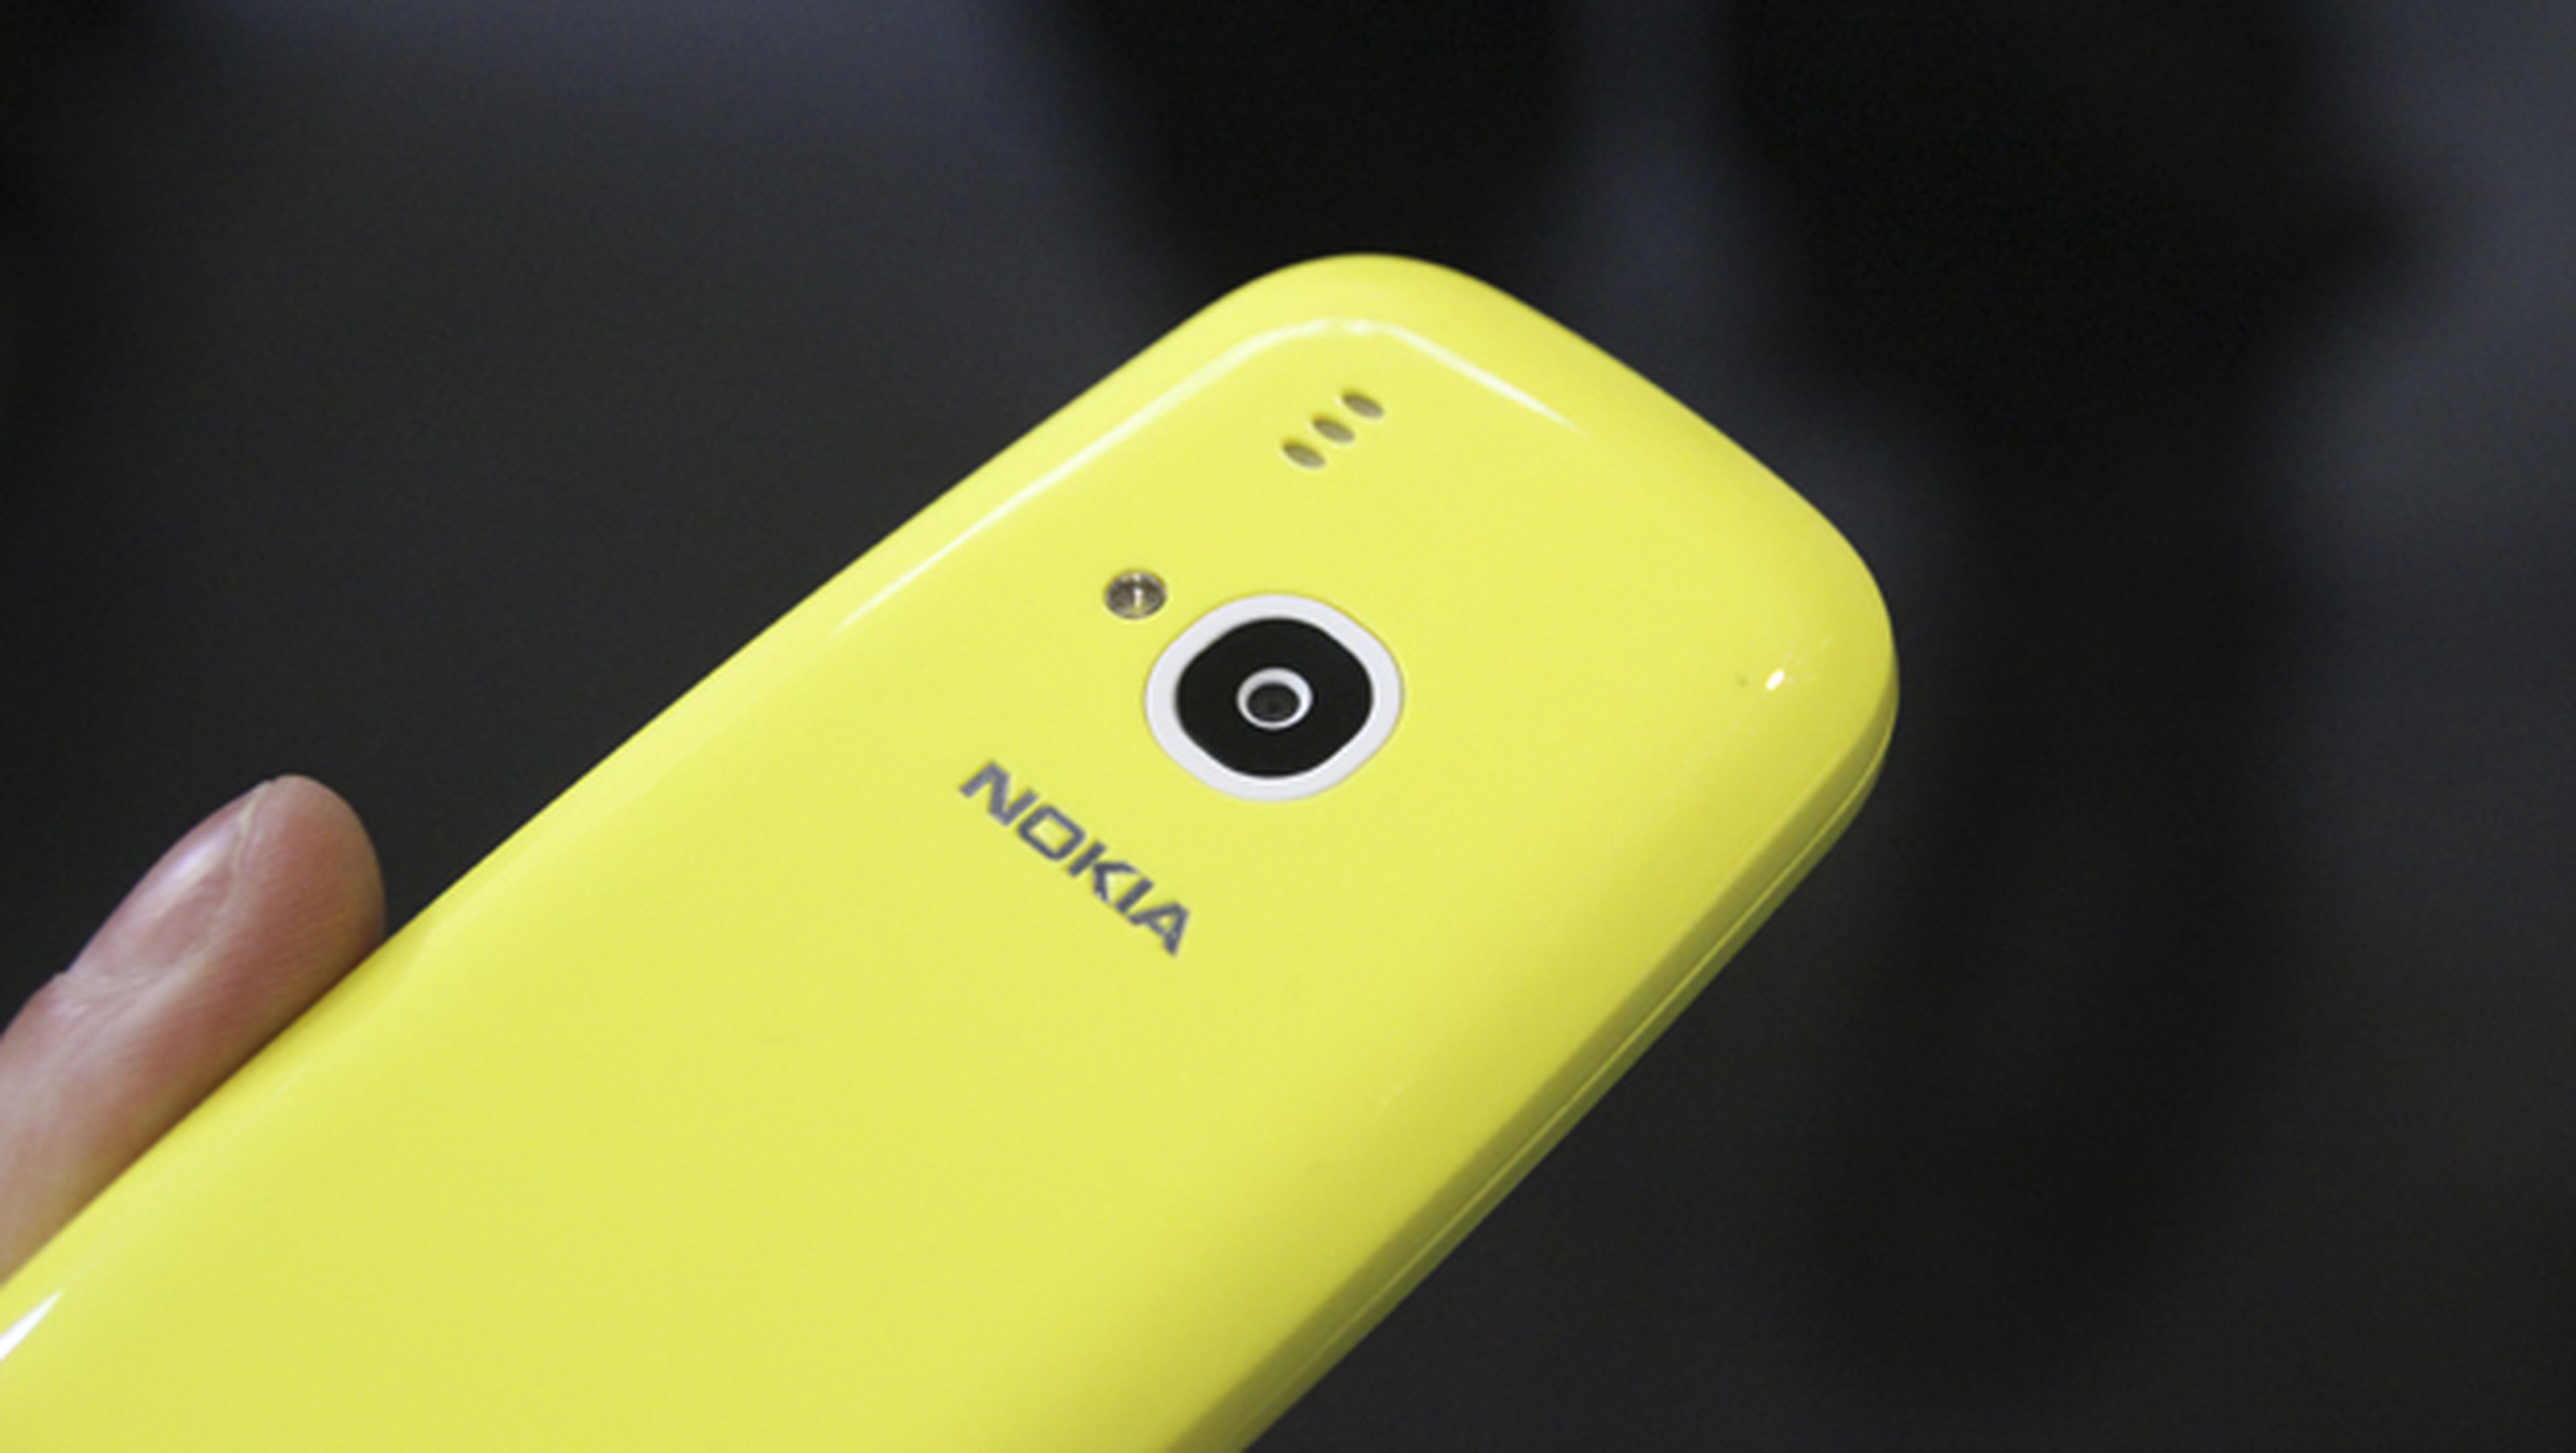 La cámara del Nokia 3310 nuevo